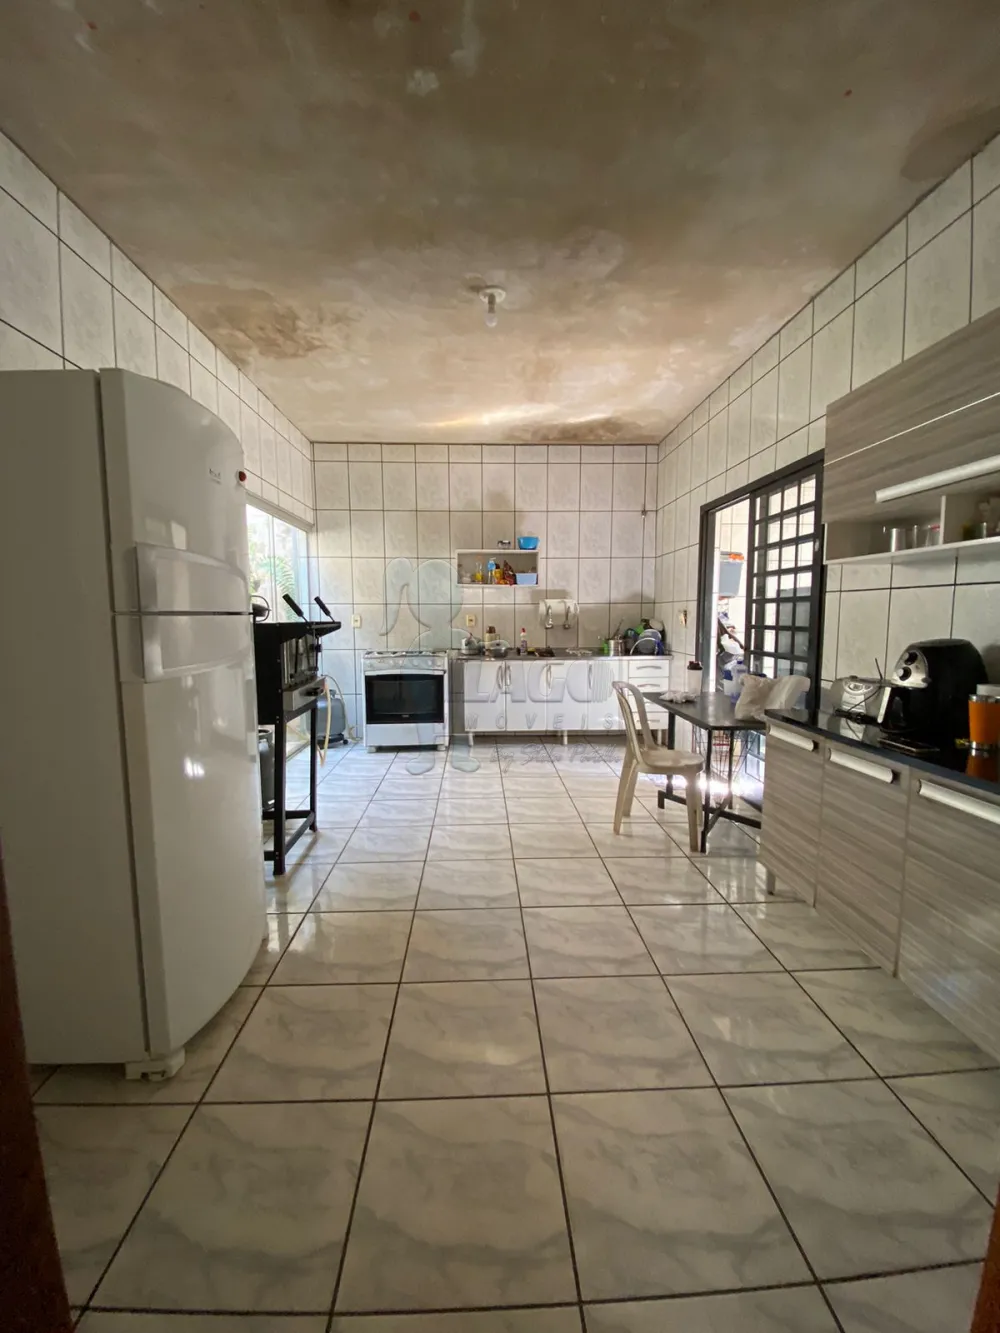 Comprar Casas / Padrão em Ribeirão Preto R$ 290.000,00 - Foto 11